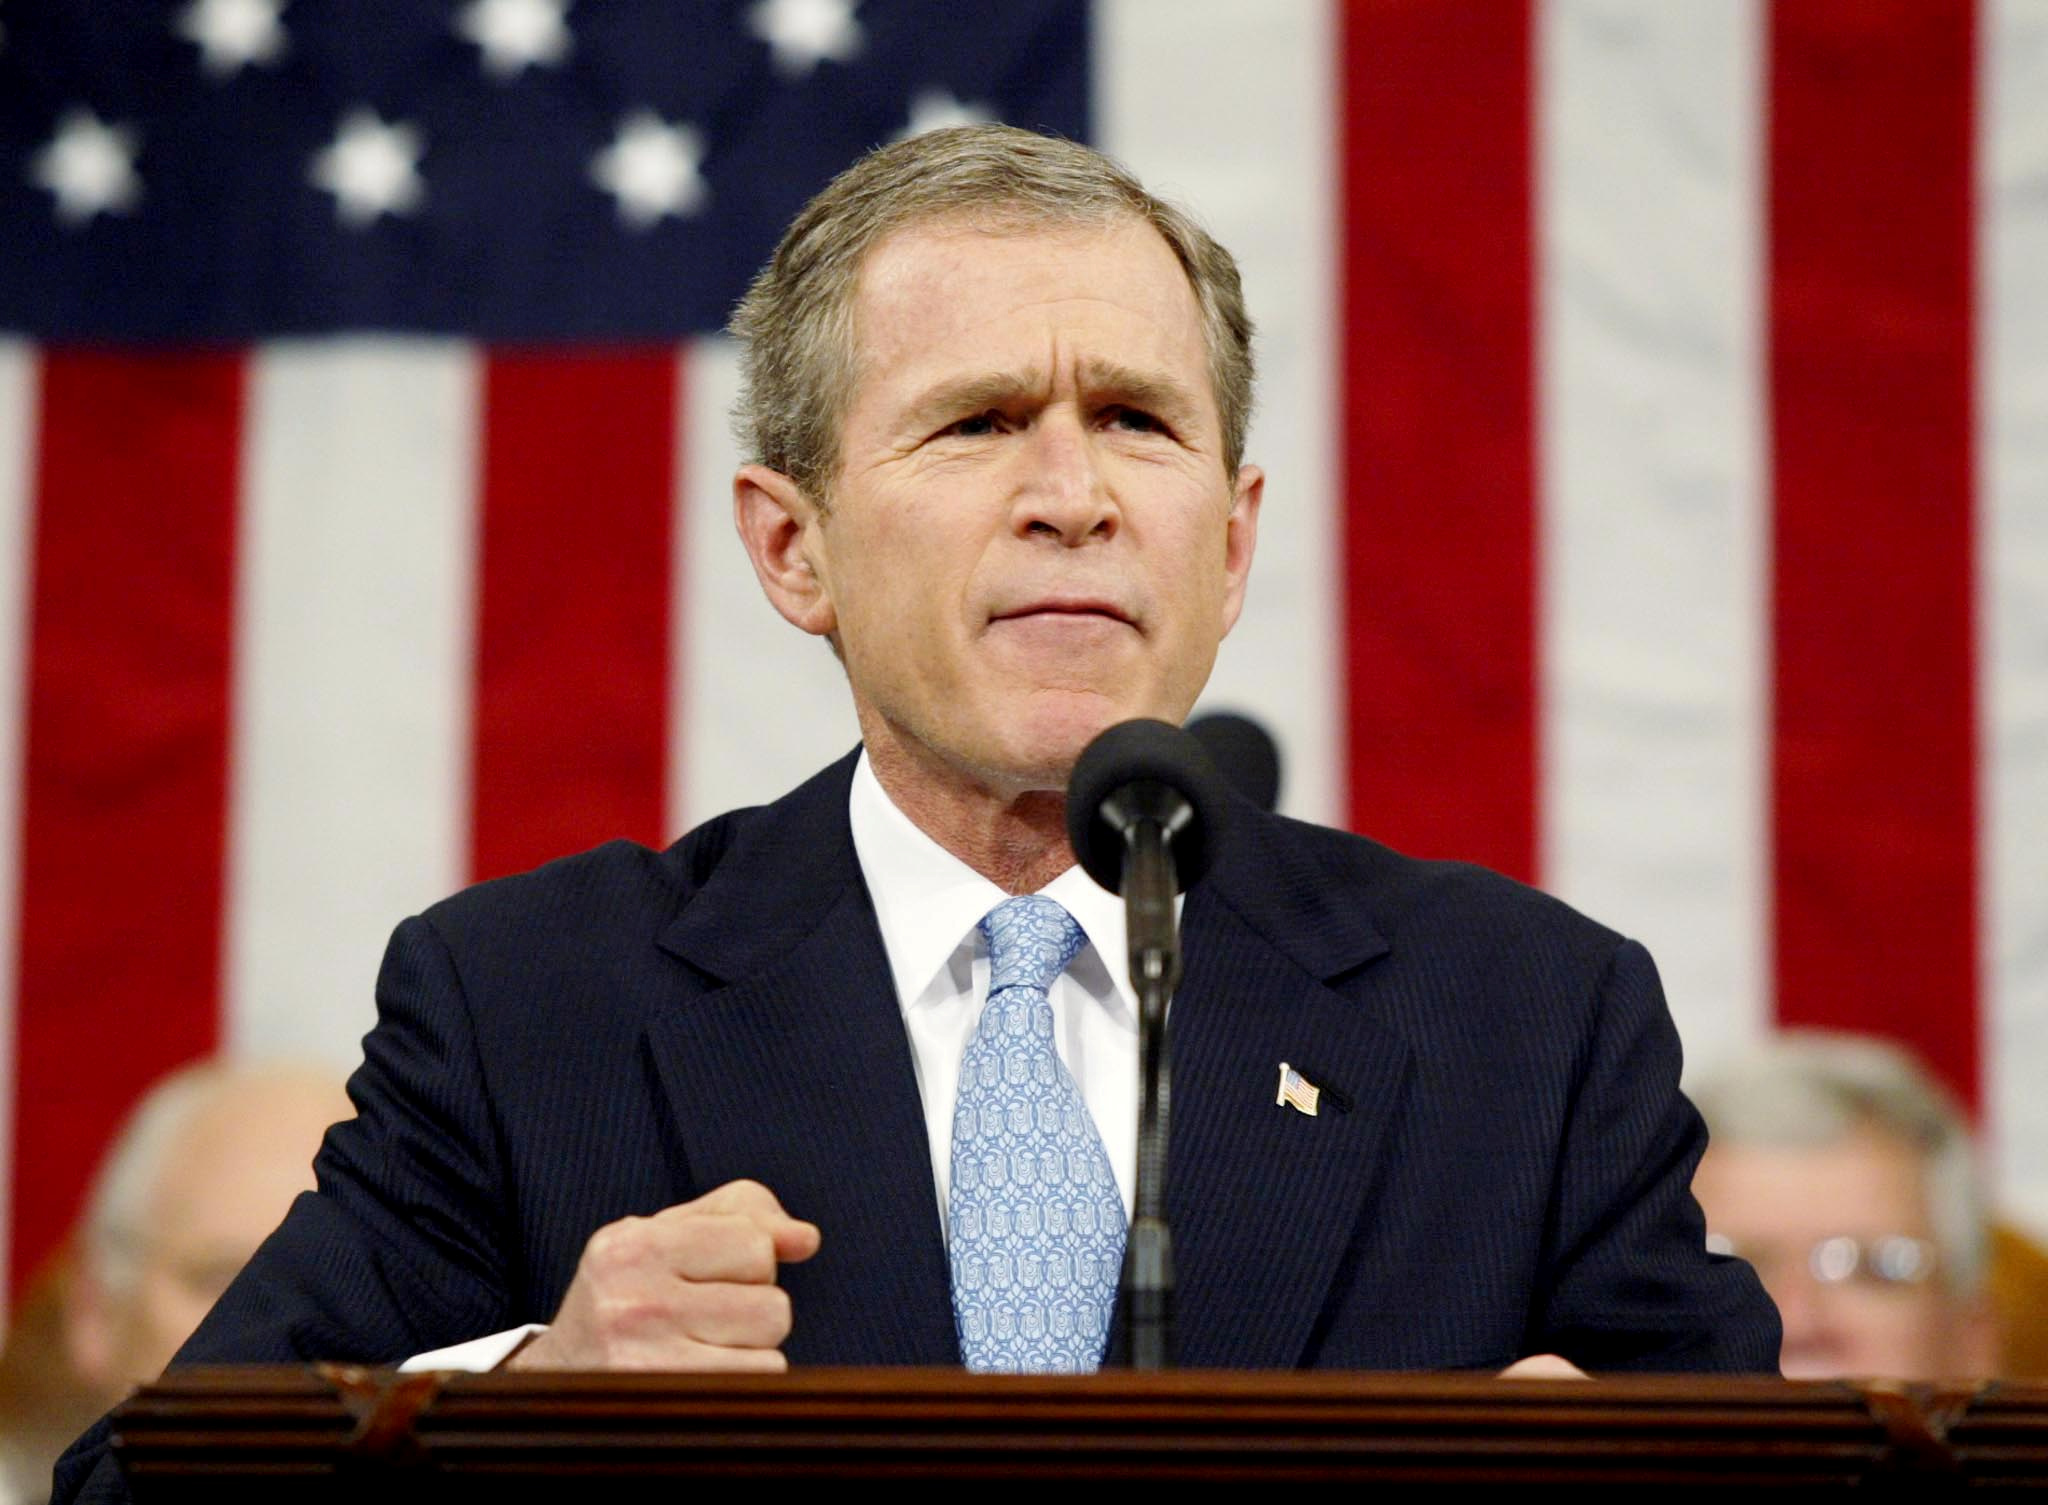 El Estado Islámico intentó asesinar al ex presidente George W. Bush dentro de los Estados Unidos